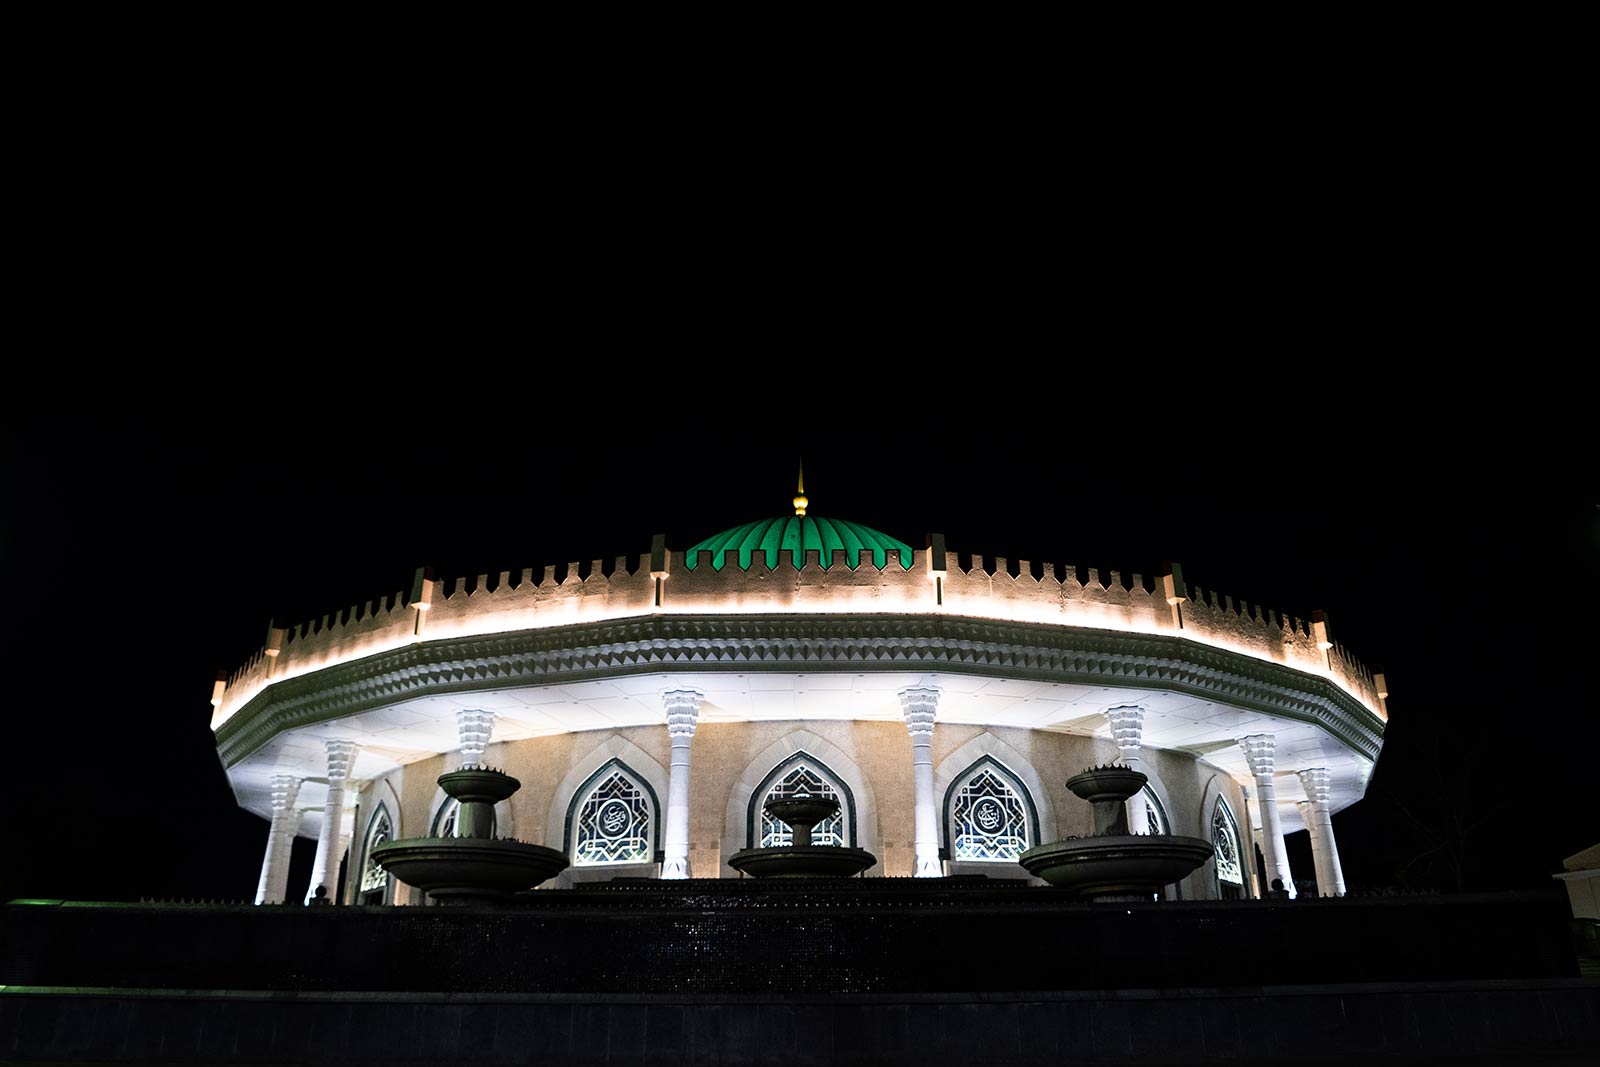 Lighted architecture at night in Tashkent, Uzbekistan. A day in stunning Samarkand